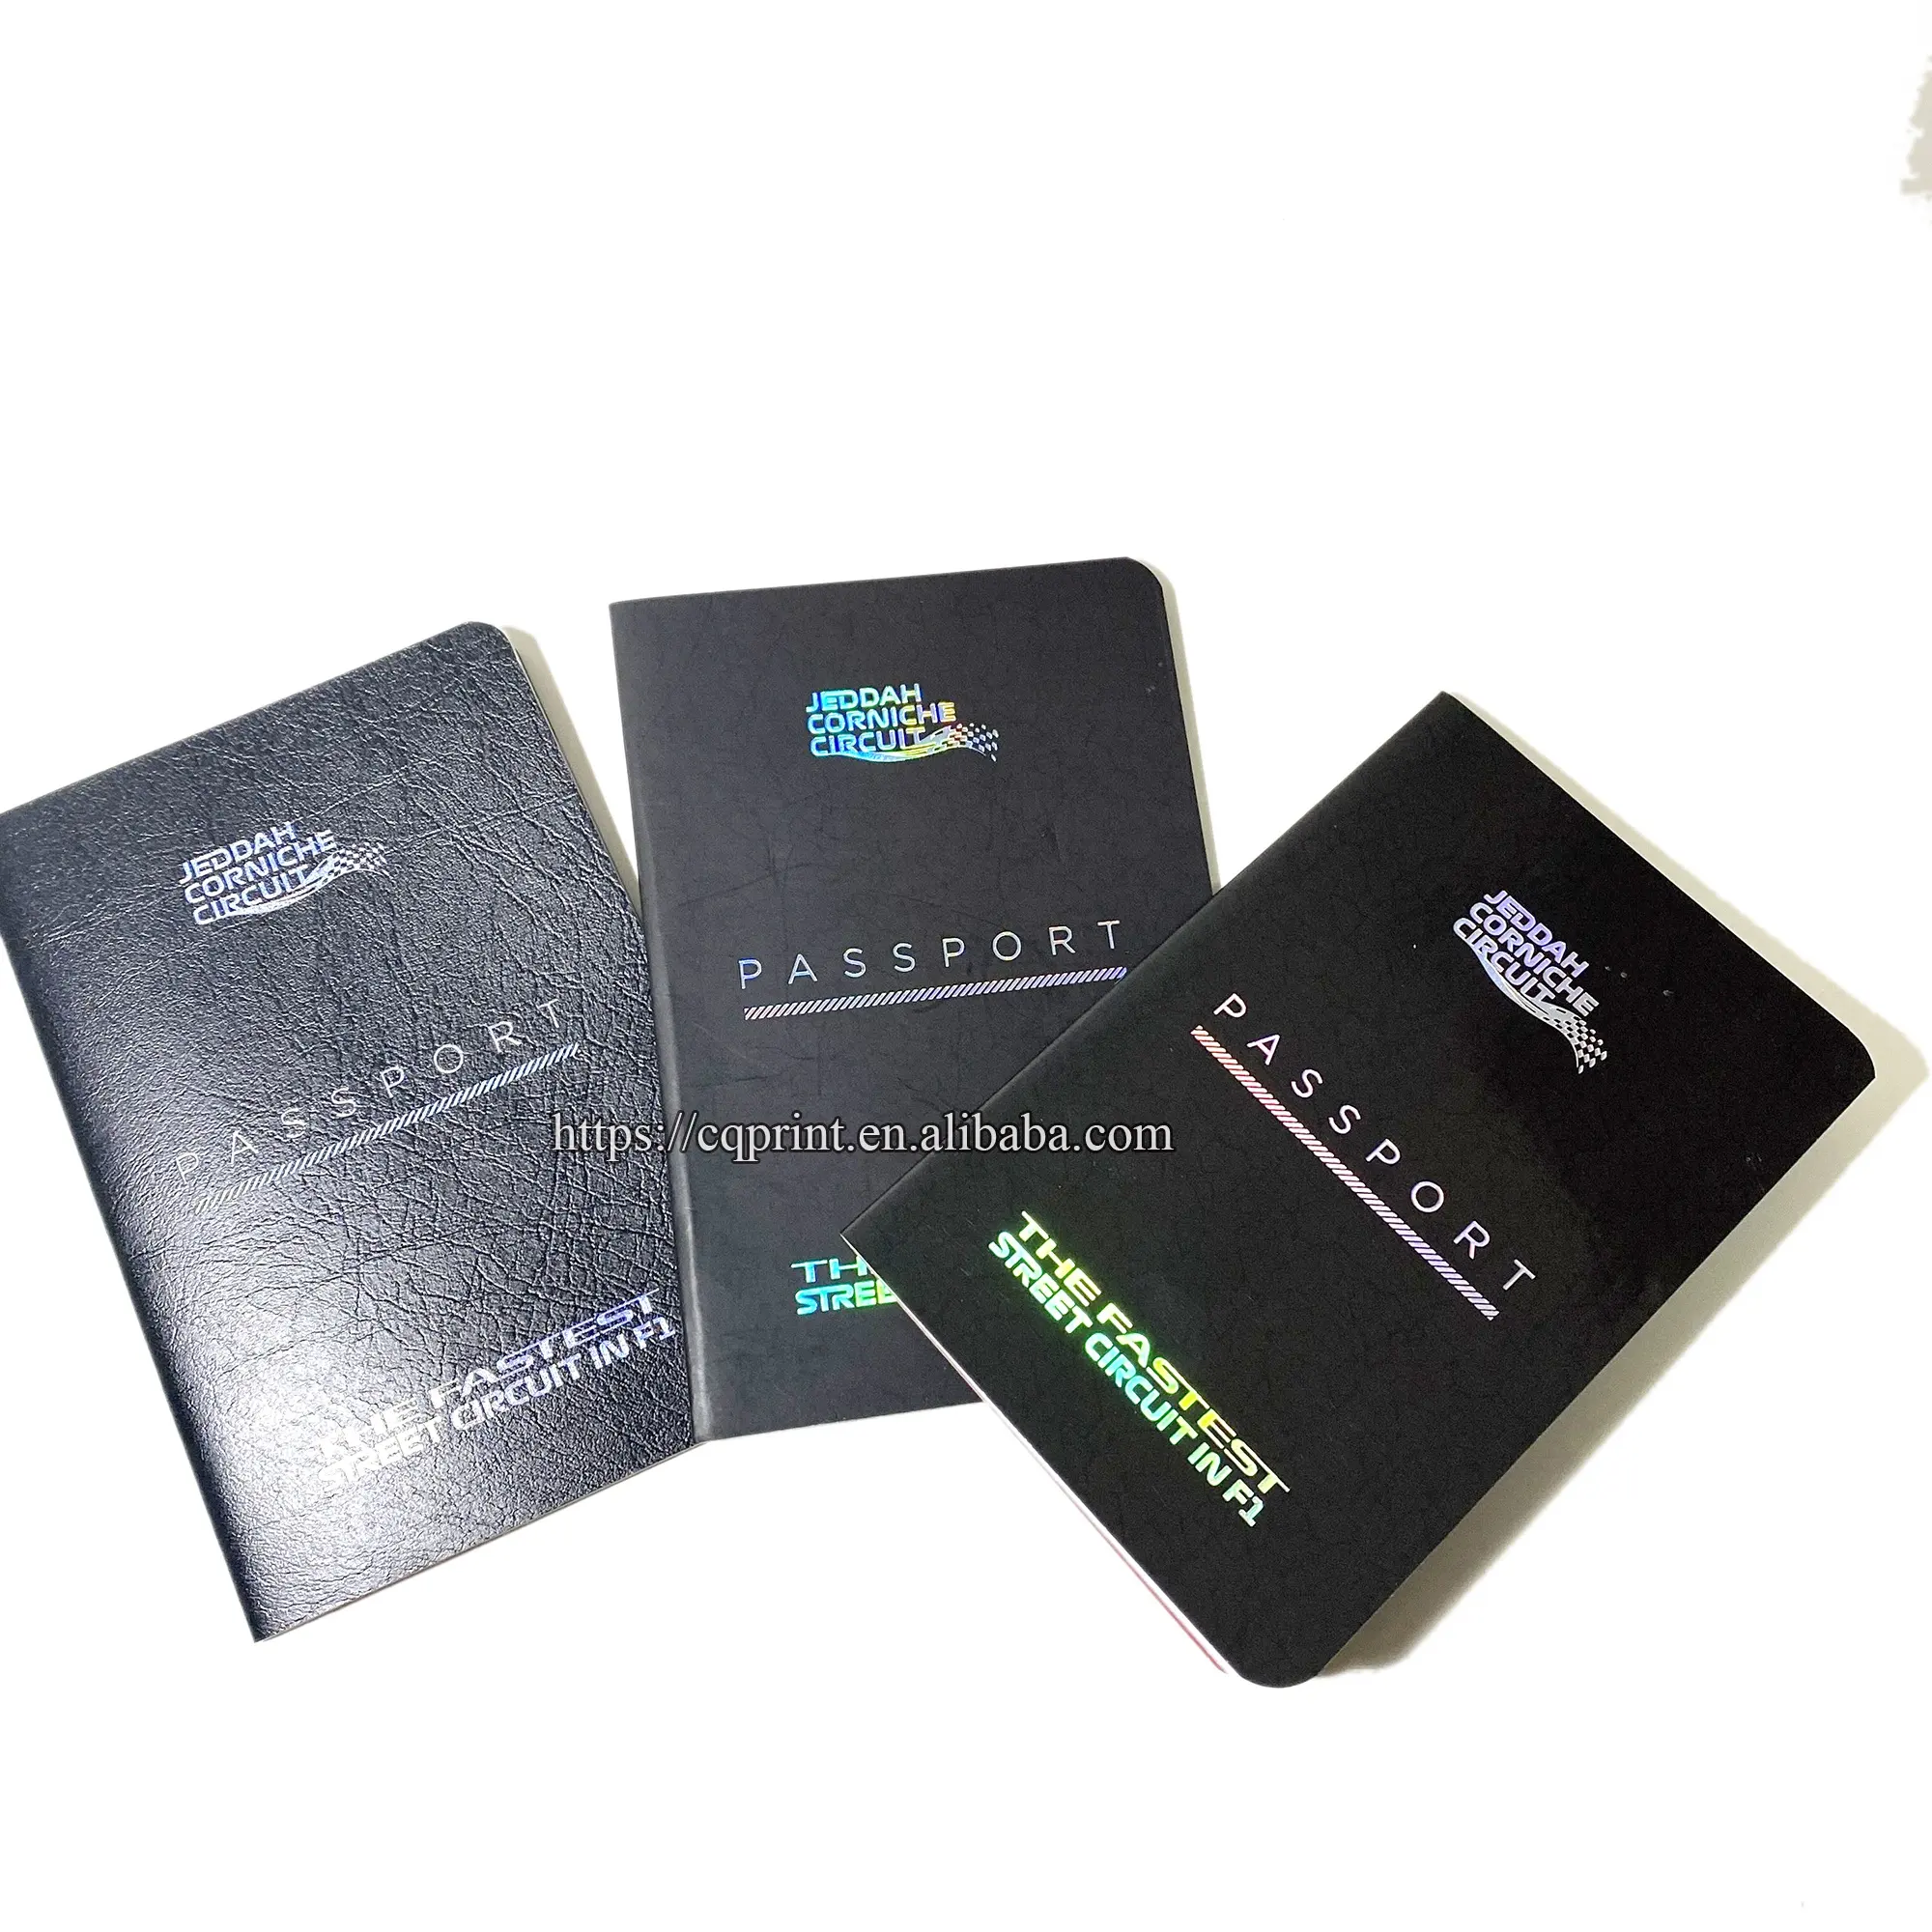 Kunden spezifisches Firmen mitglied Hot Sale Broschüre Hot Stamp ing Pass druck Cover Material Optional Verschiedene Stile